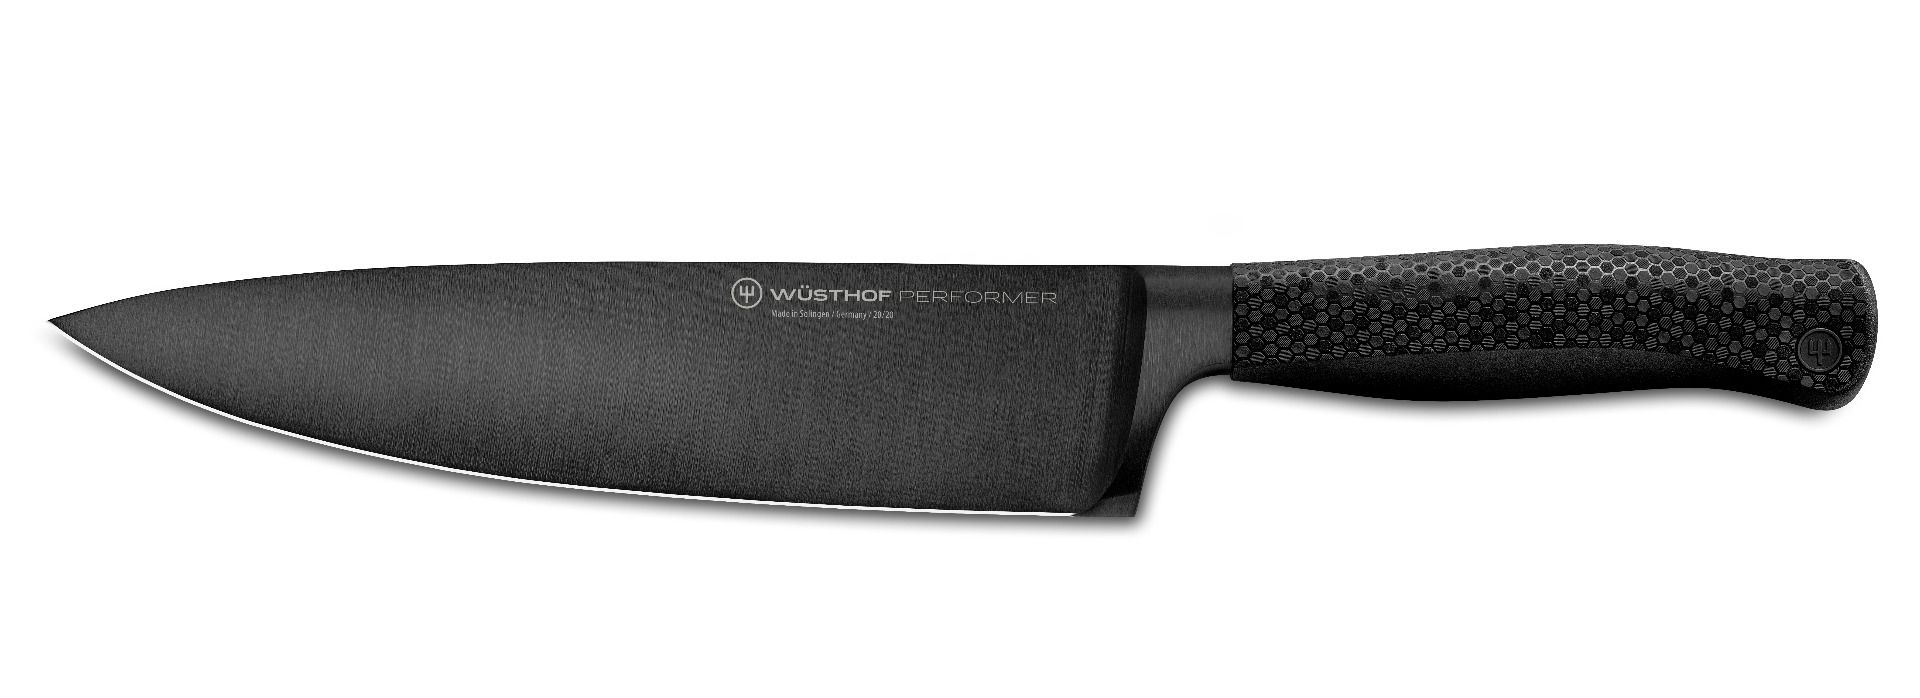 Wusthof Performer coltello da cuoco 20 cm rivestimento in DLC